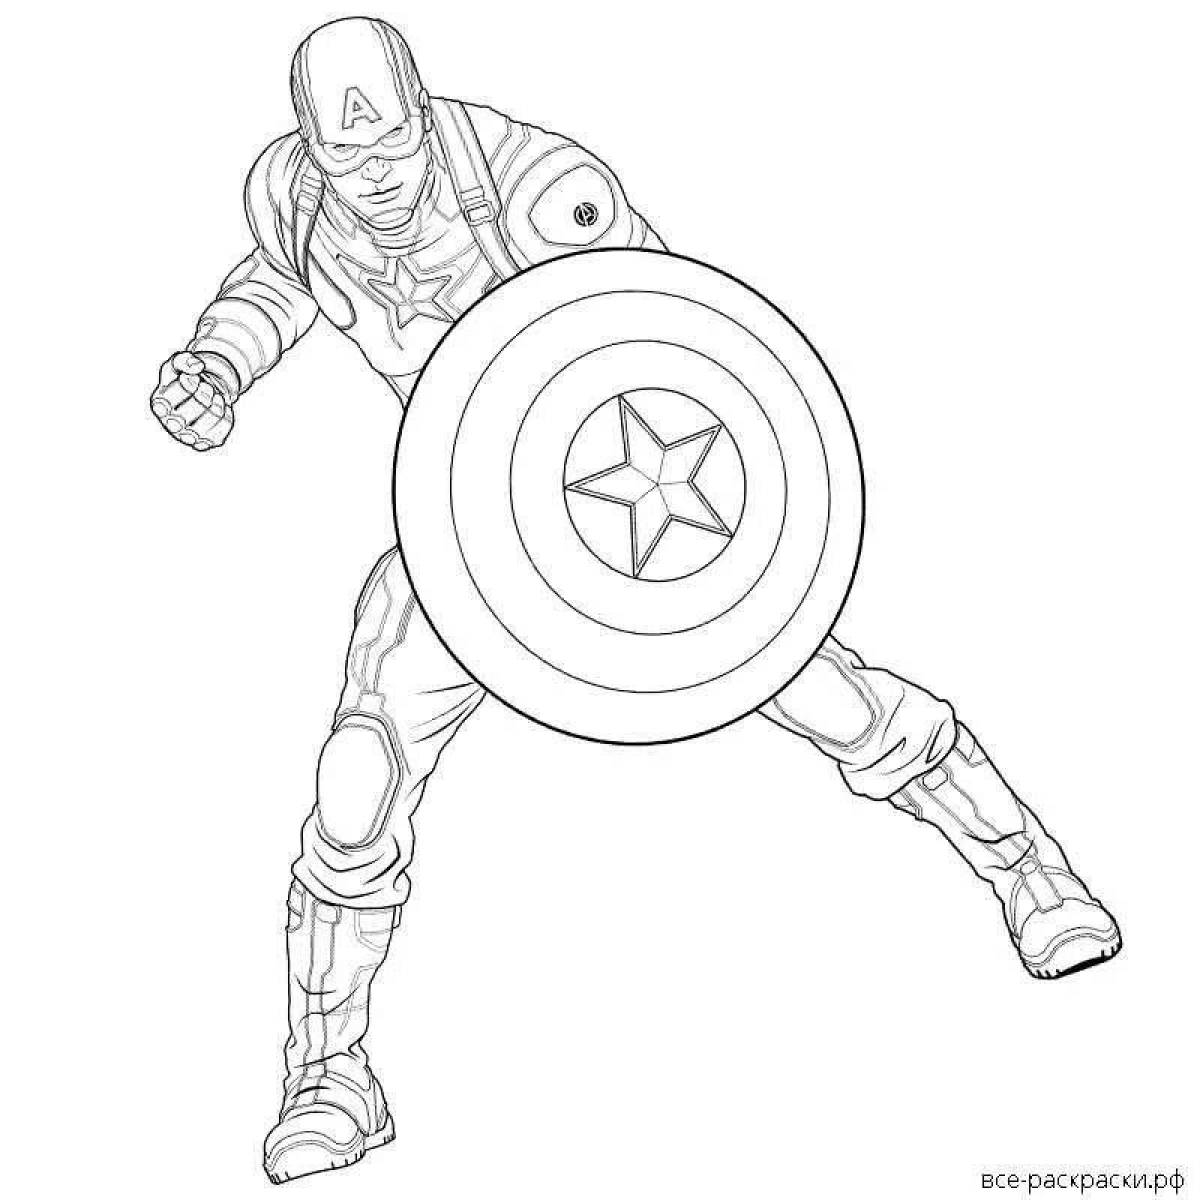 Impressive captain america's shield coloring page